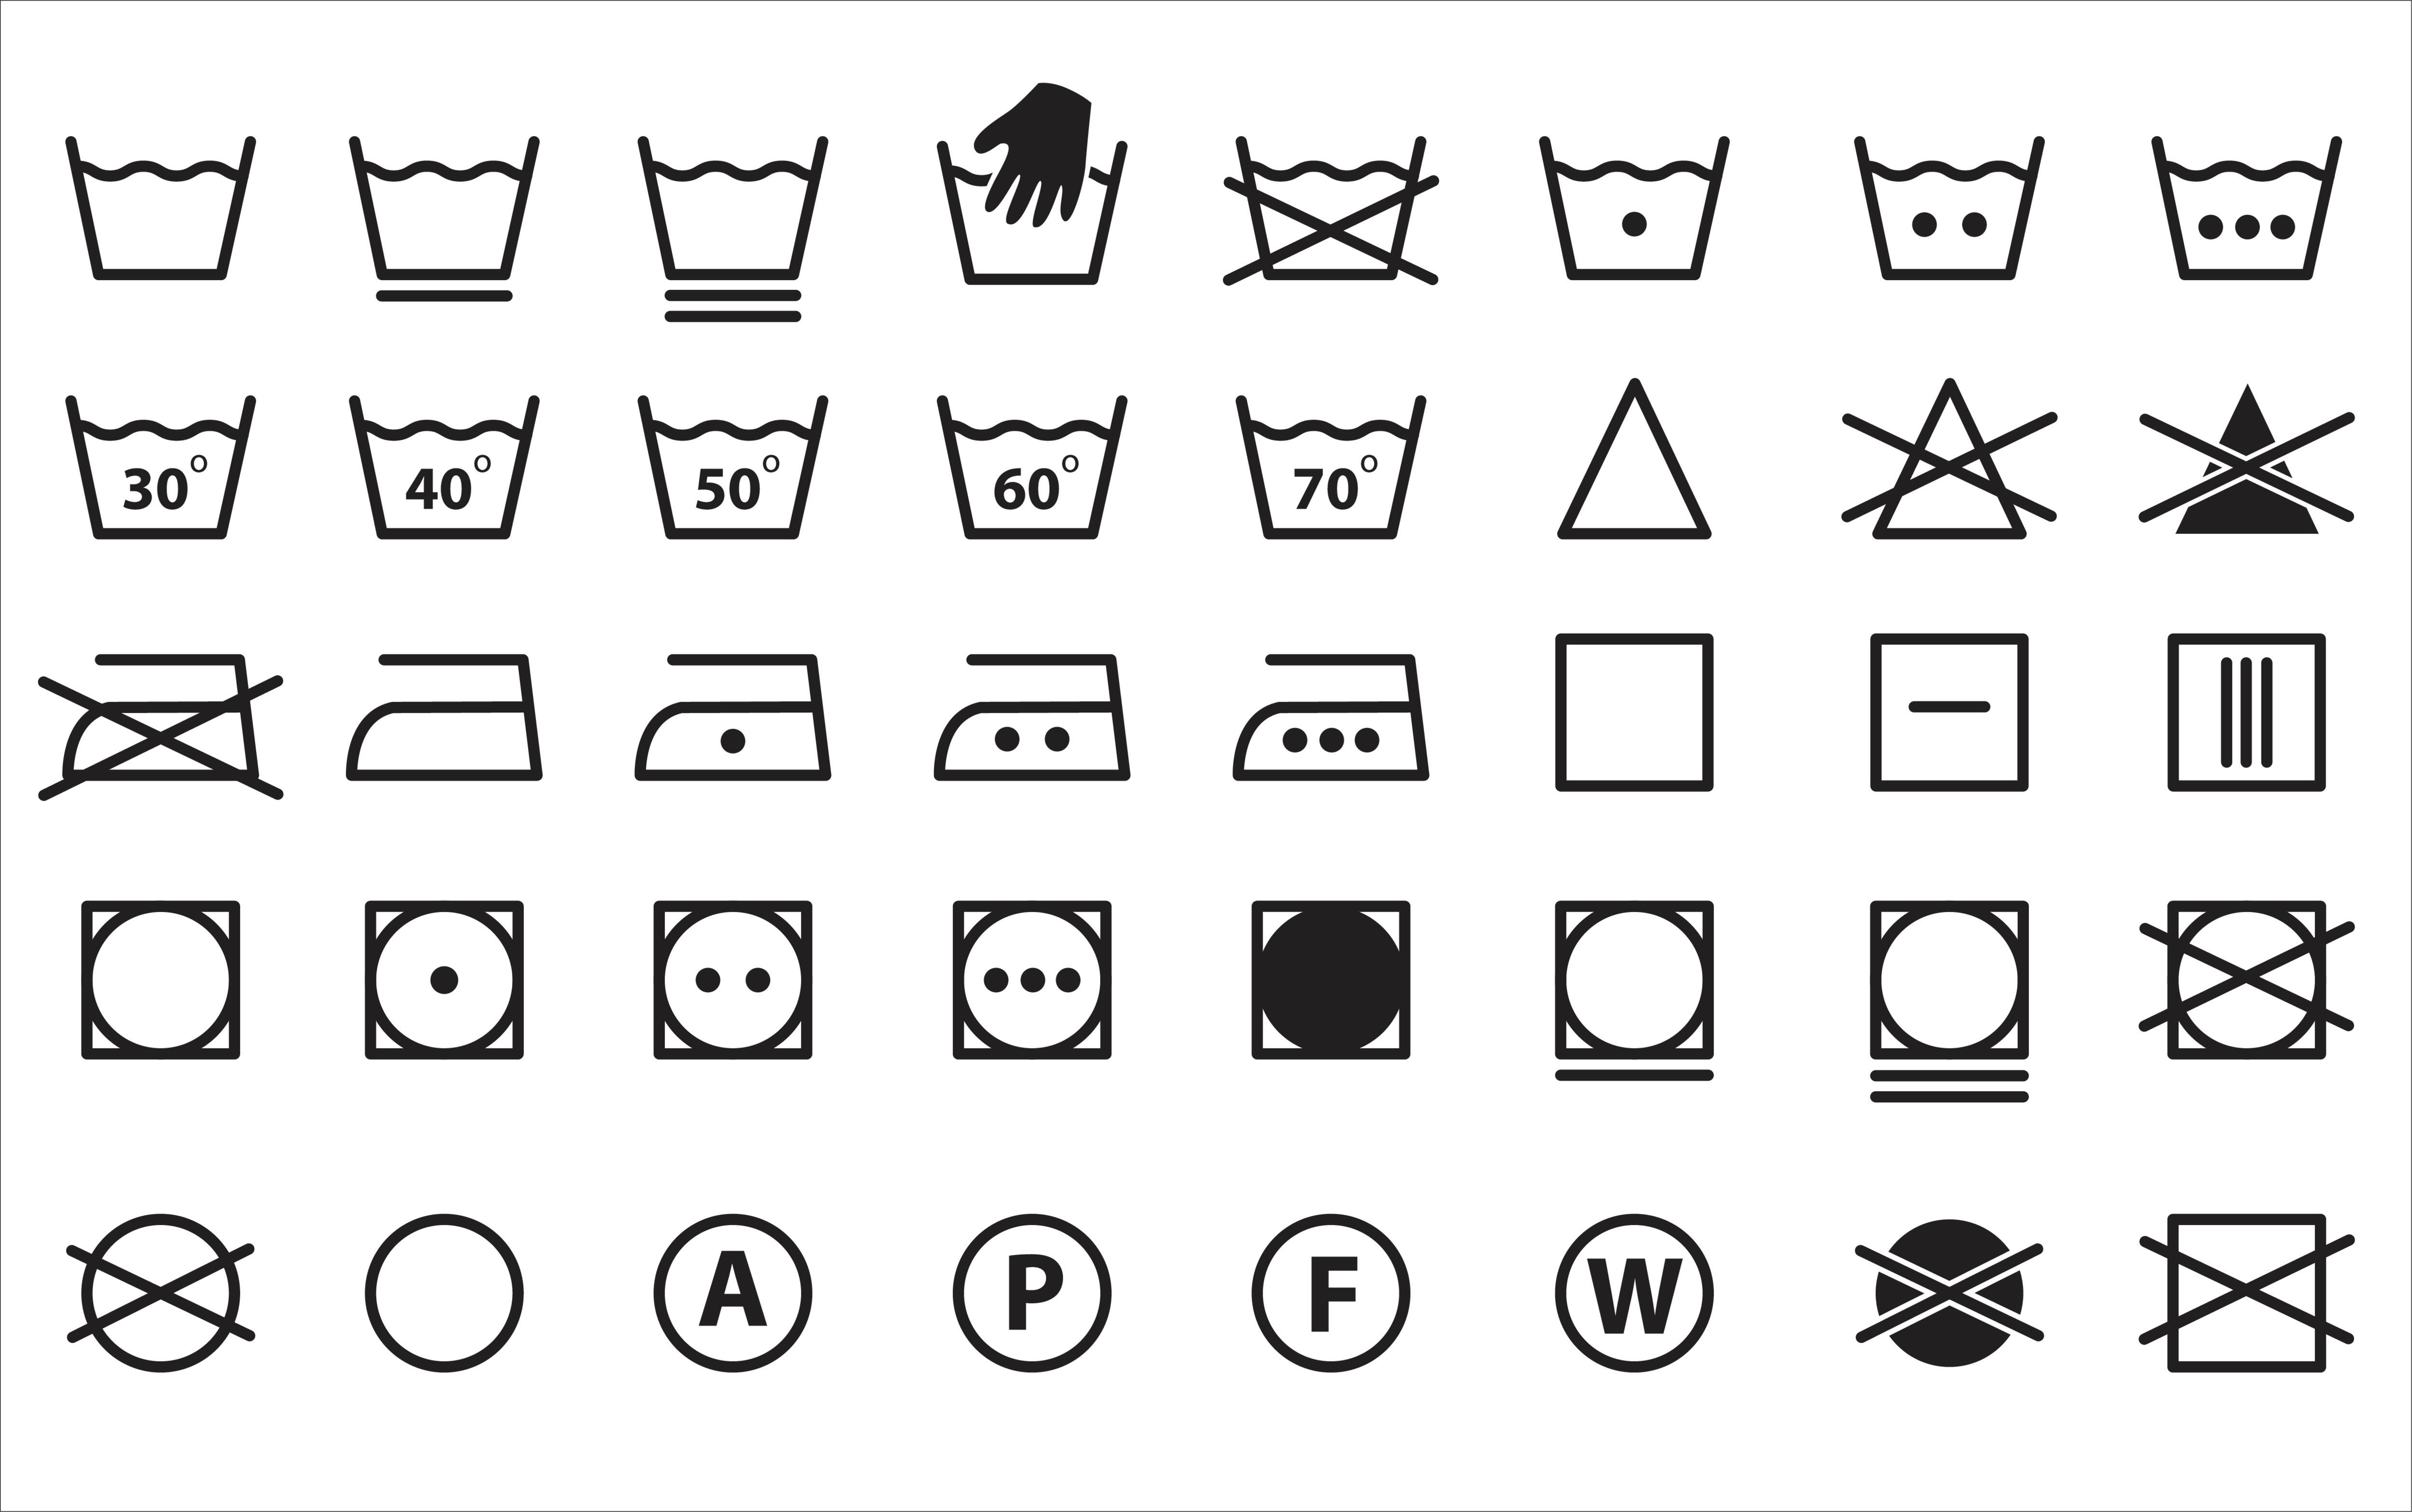 Washing Symbols Matching Cards Washing Symbol Matching Cards | vlr.eng.br